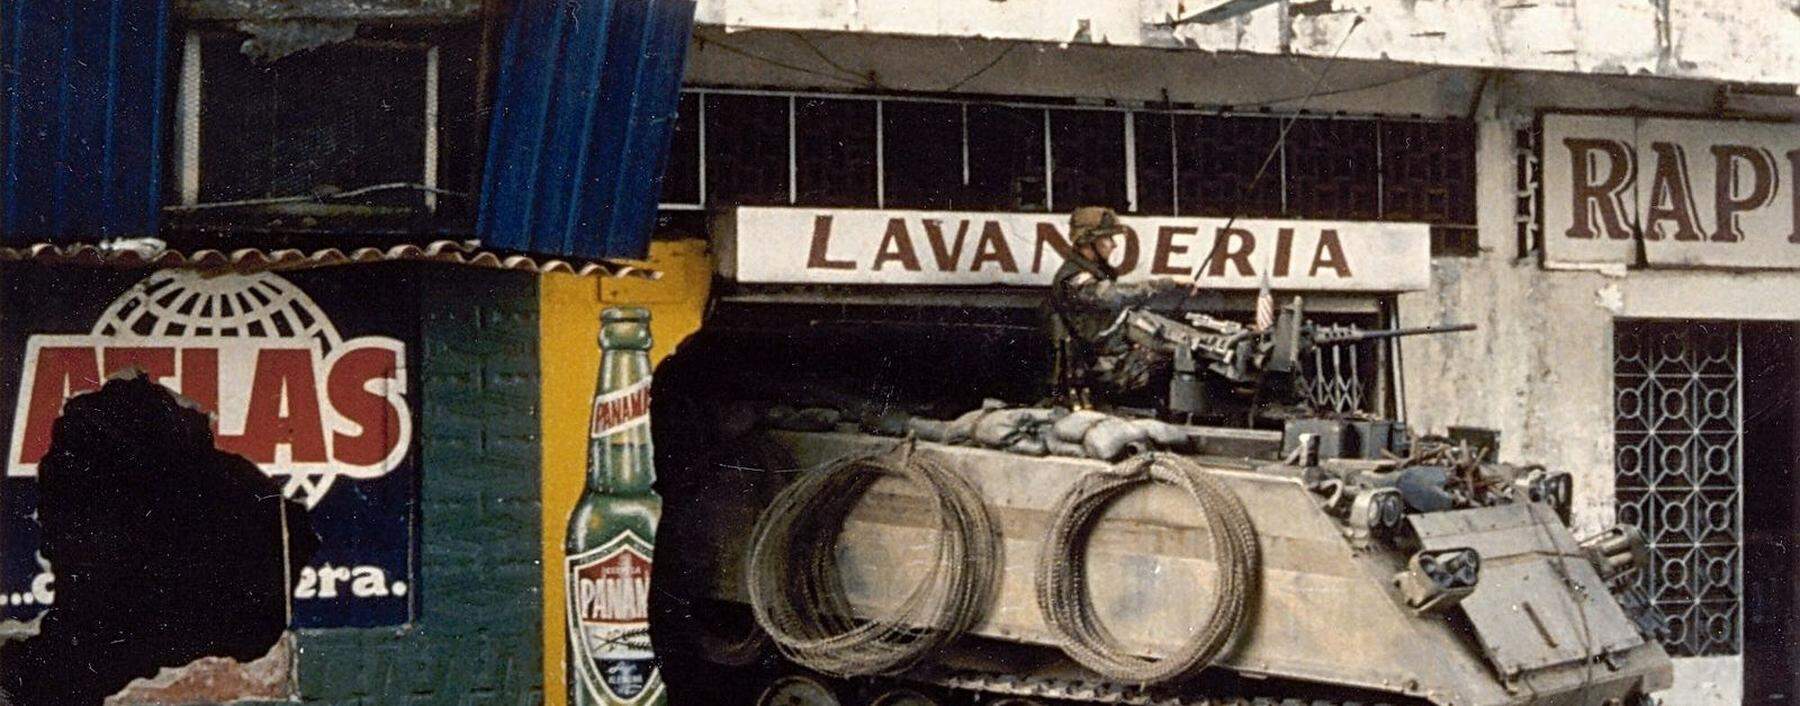 Der Panzer in der Wäscherei. Das Foto entstand während der Invasion der US-Armee in Panama am 21. Dezember 1989. 